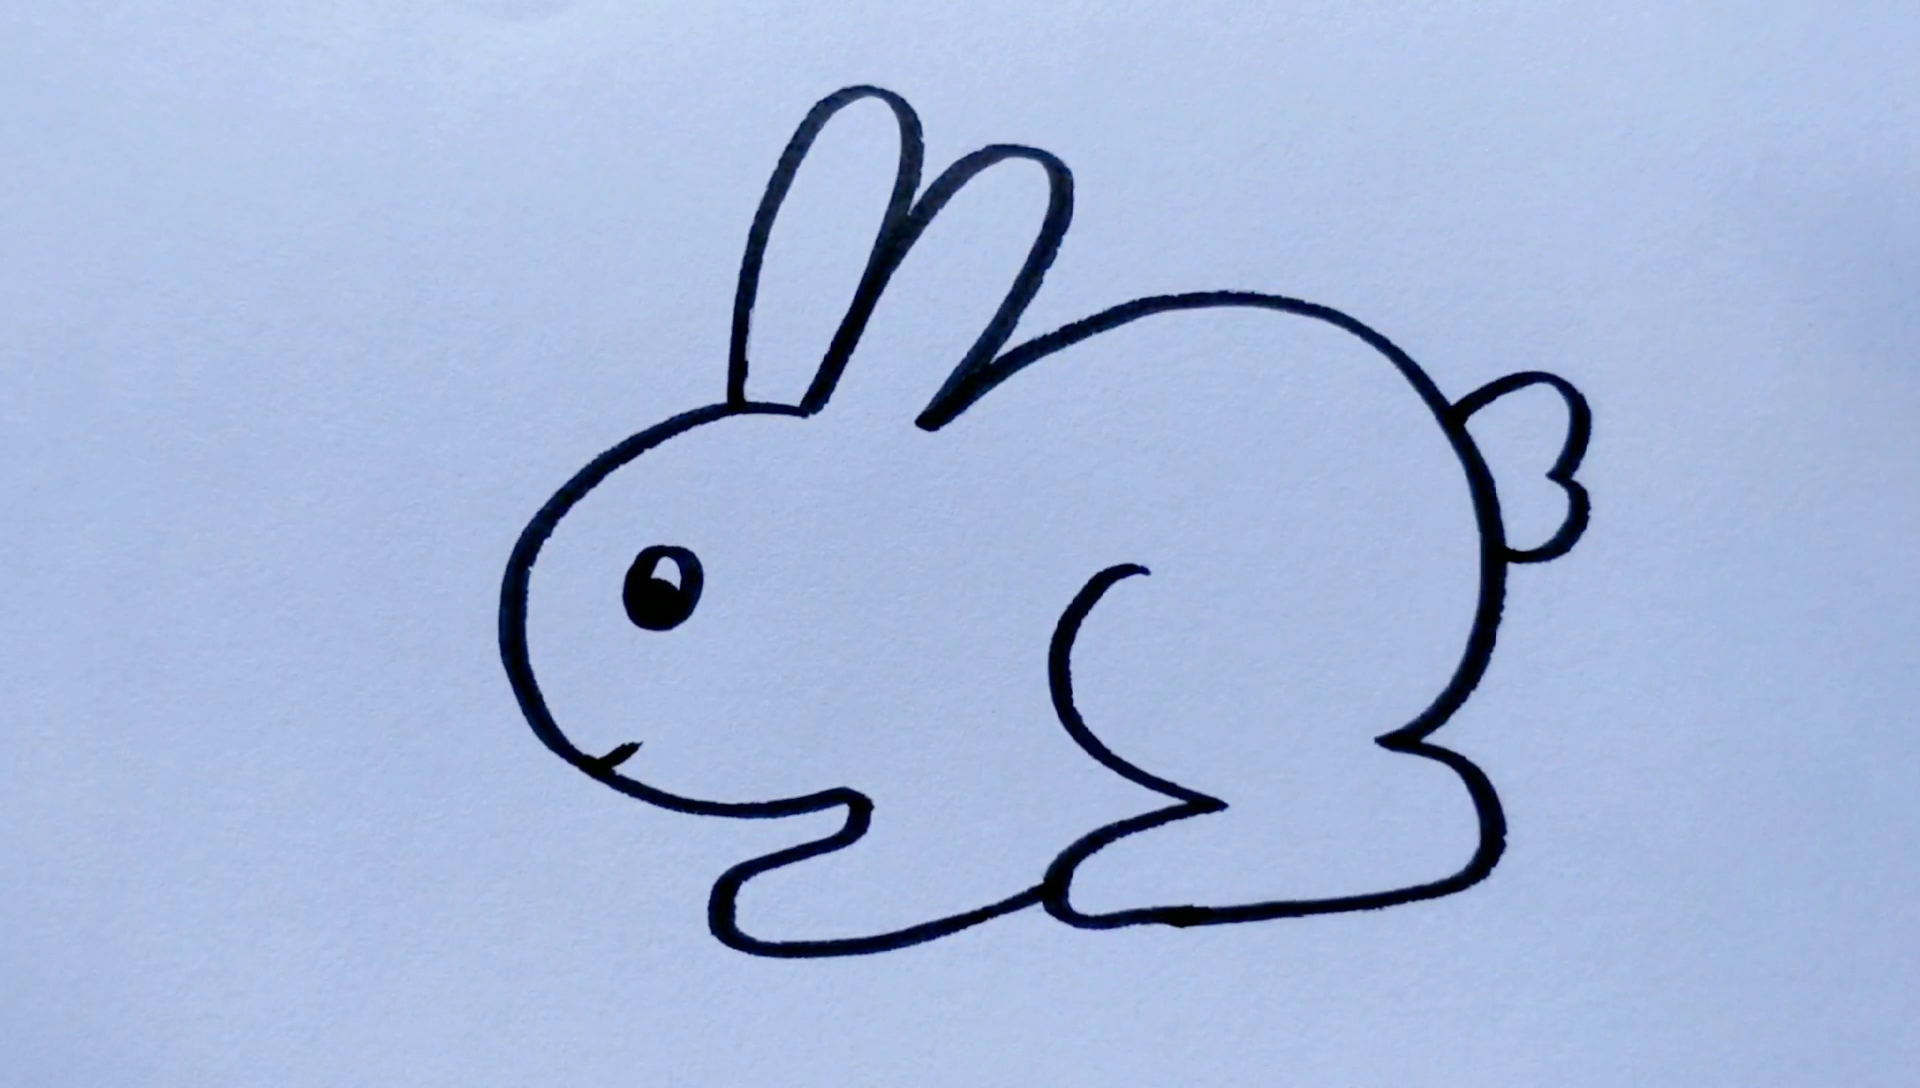 小兔子三瓣嘴简笔画图片